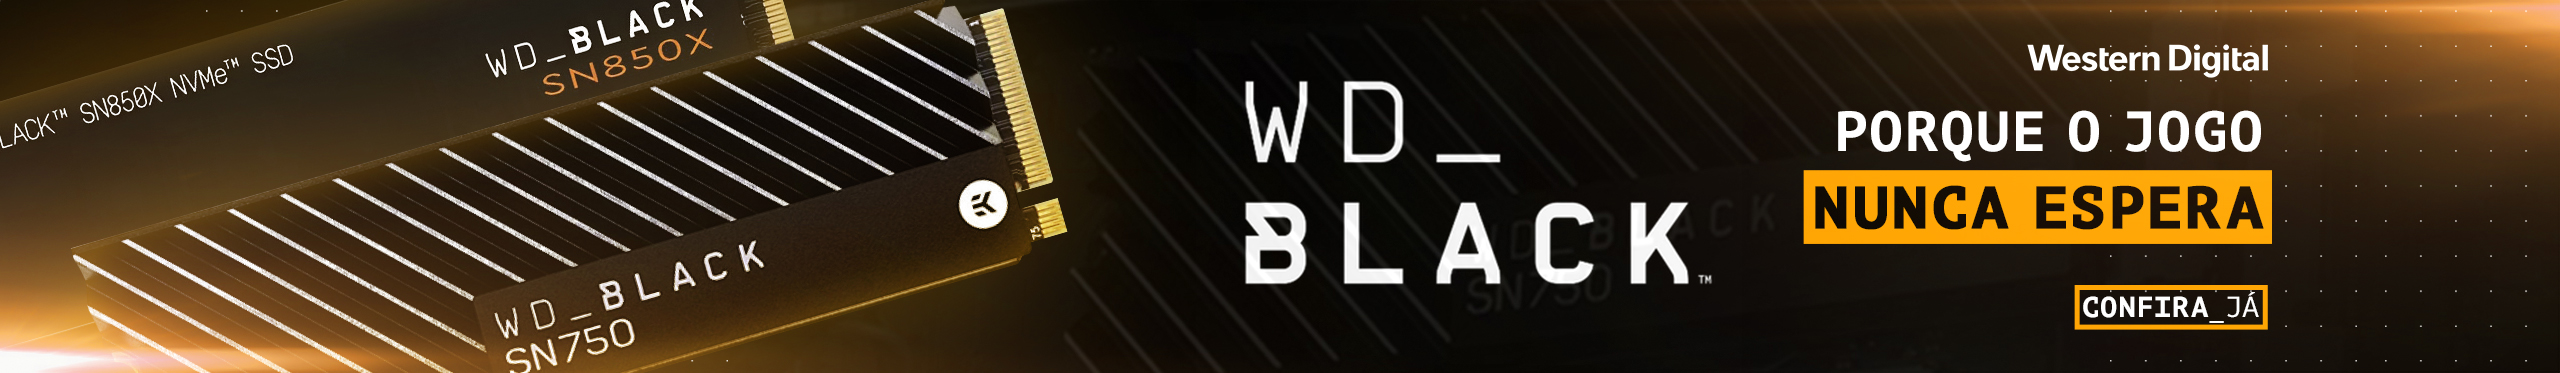 SSDs WD Black | O melhor desempenho para o seu PC. Confira agora!